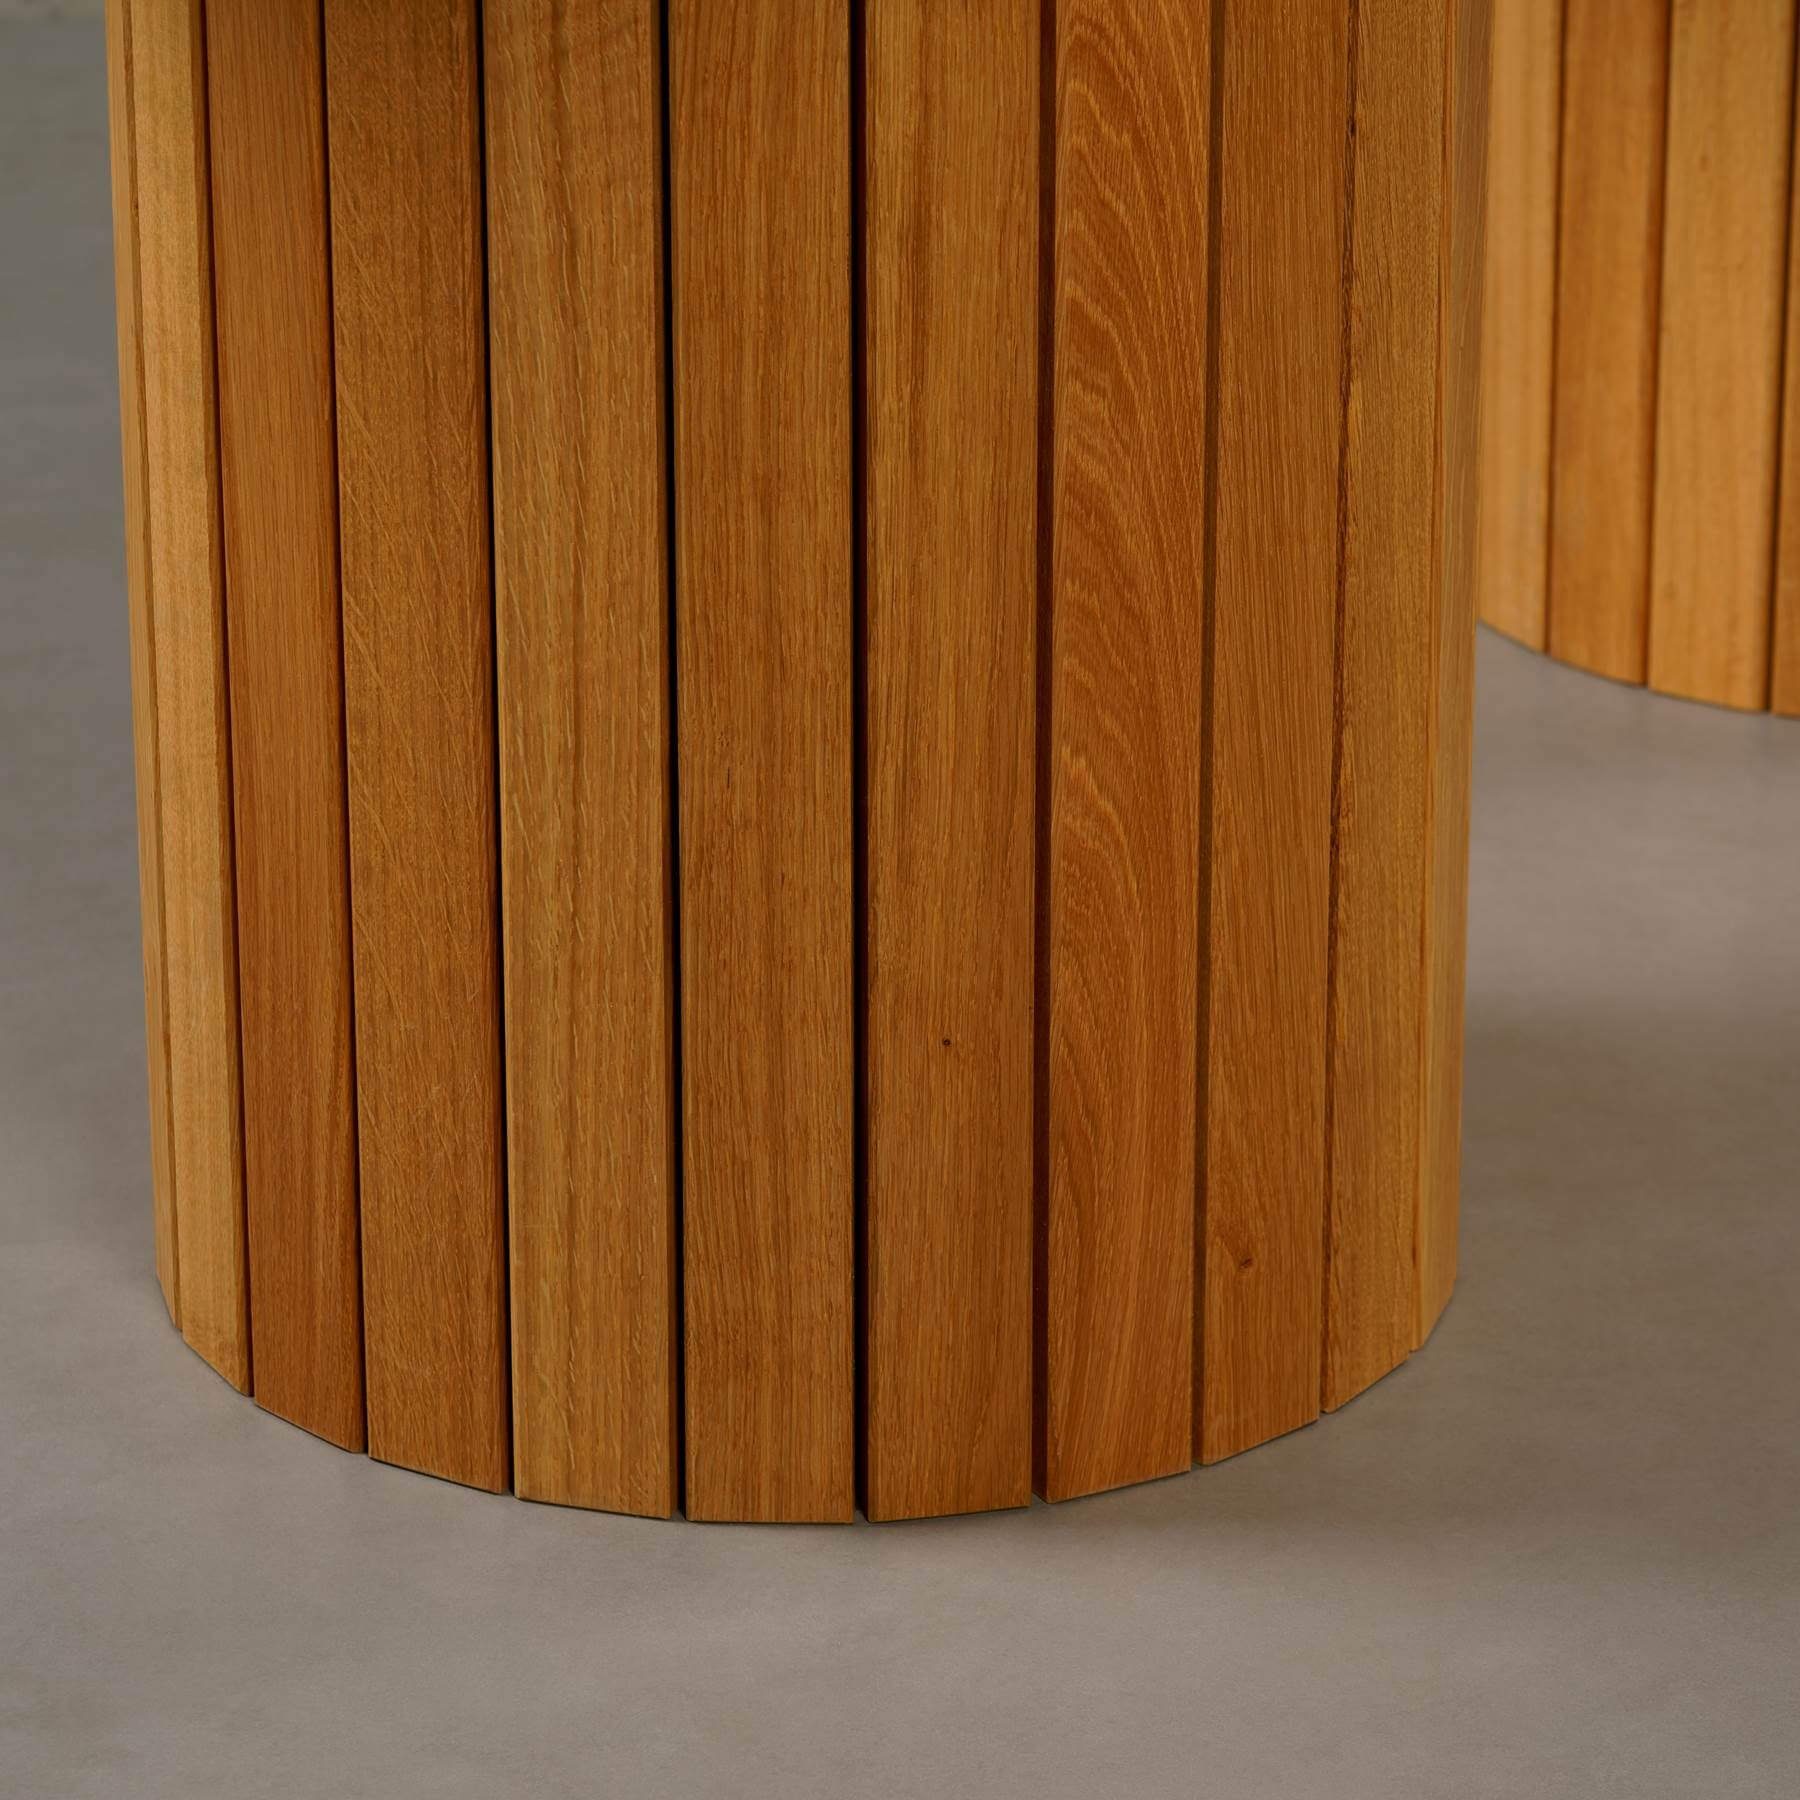 Montana mit ECHTEM Tisch 200x100x76cm Atelier Esstisch rund, Gestell, Eichenholz Guatemala Verde Esstisch MAGNA MARMOR,